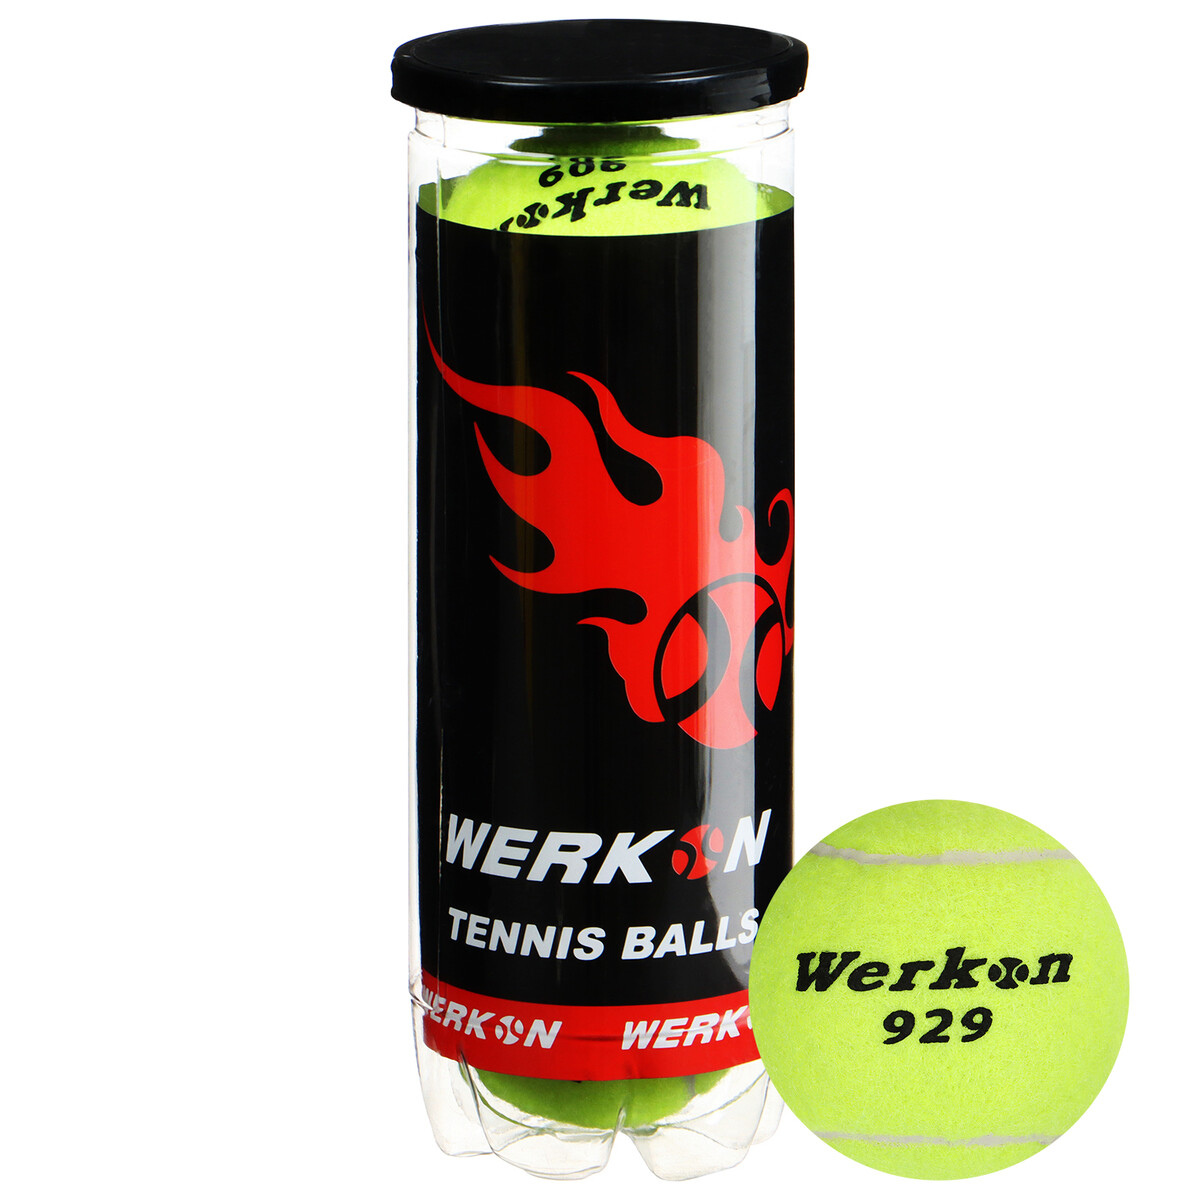 Набор мячей для большого тенниса werkon 929 в тубе, 3 шт. набор зажимов для бумаг 15 мм 60 штук в пластиковой тубе черные